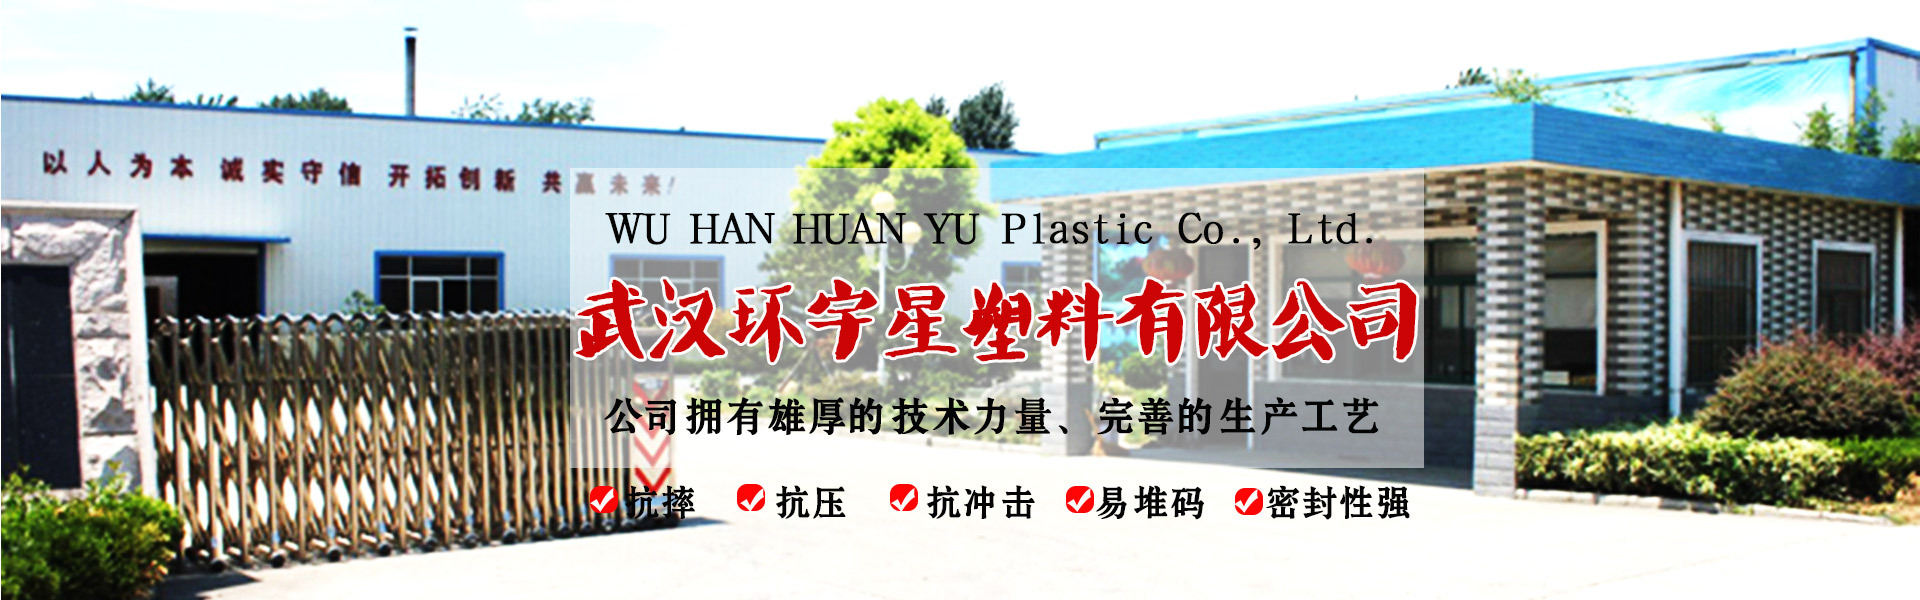 武汉环宇星塑料有限公司网站形象图